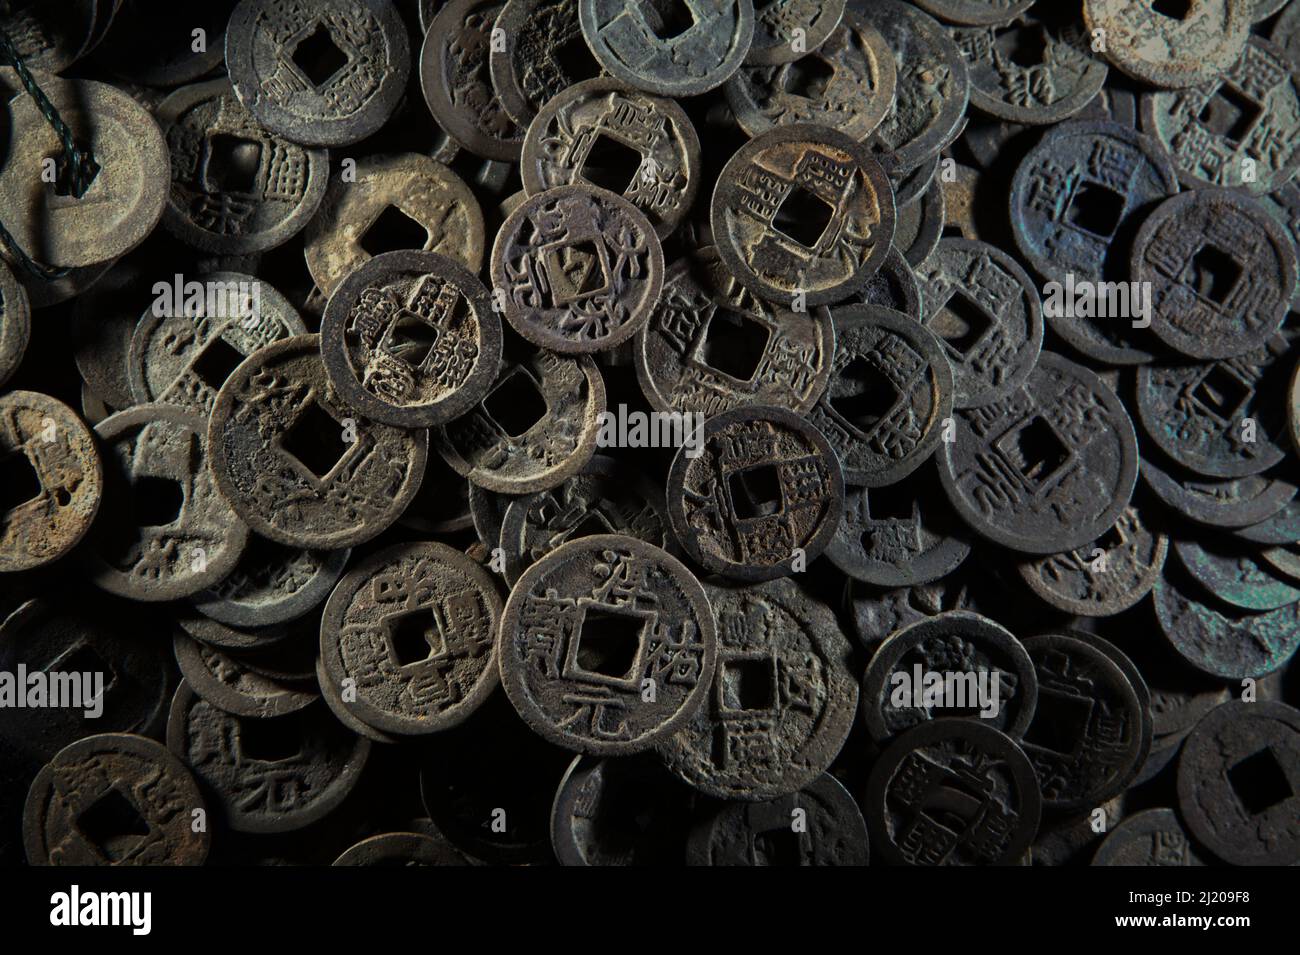 Antiguas monedas chinas fechadas entre 2th y 13th siglos que se recogen de los aldeanos que viven en el delta del río Batanghari en Jambi, Indonesia. 'La mayoría de las monedas son de la era del emperador Li Yuan (618-626 d.C.) de la dinastía Tang, seguido por monedas emitidas por Shen Tsung (1067-1085) de la dinastía Song,' dijo Roy Mardianto, el coleccionista que posee estas monedas en Jambi. Antiguos registros chinos informaron que Srivijaya no emitió sus propias monedas. 'No tienen efectivo de cobre de cuerda, pero usan trozos de plata en sus transacciones comerciales', escribió Chau Ju-kua (Zhao Rugua) Foto de stock